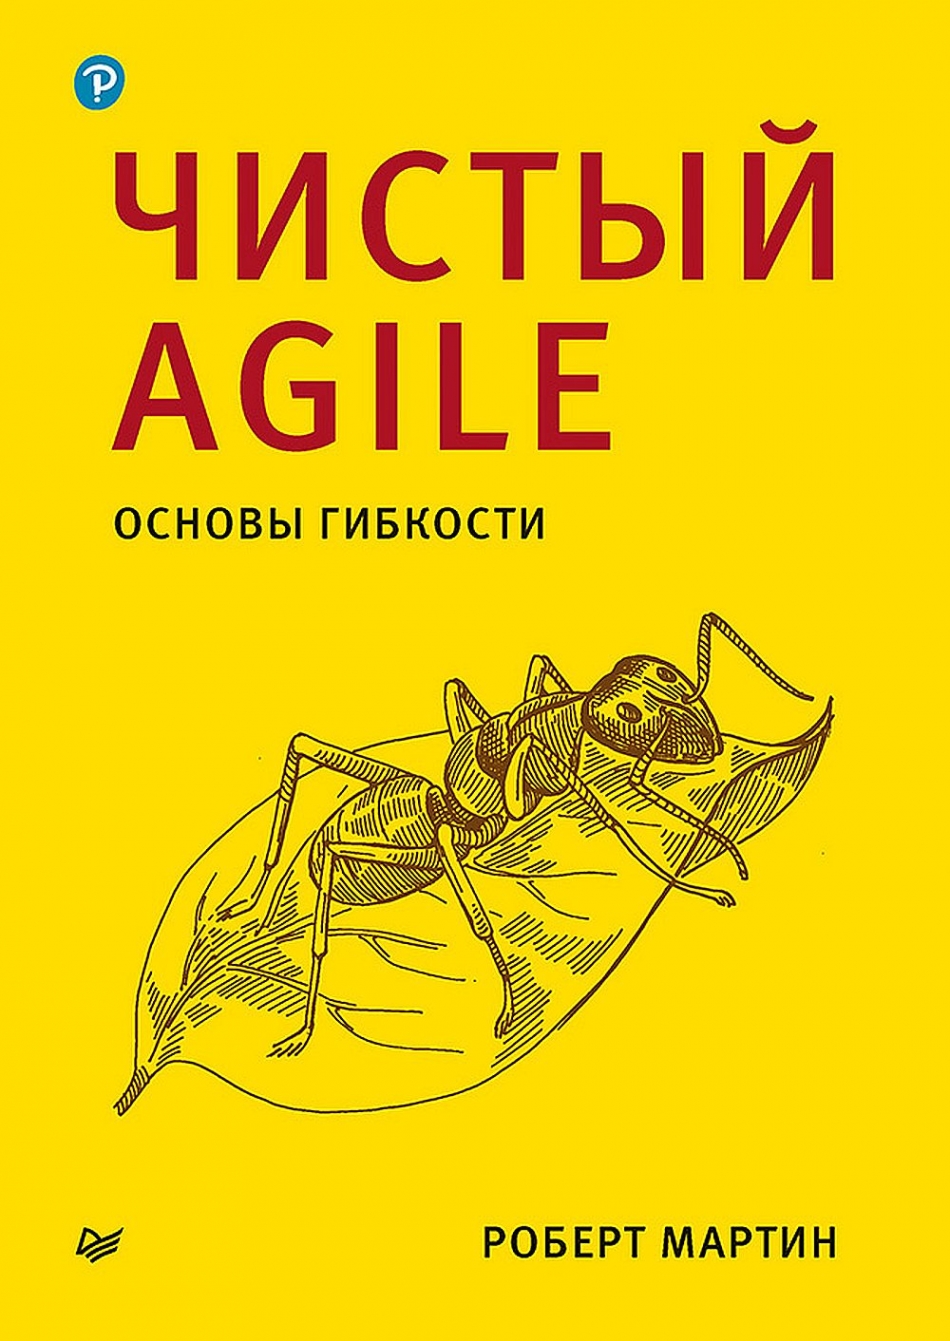 Мартин Р. Чистый Agile. Основы гибкости 